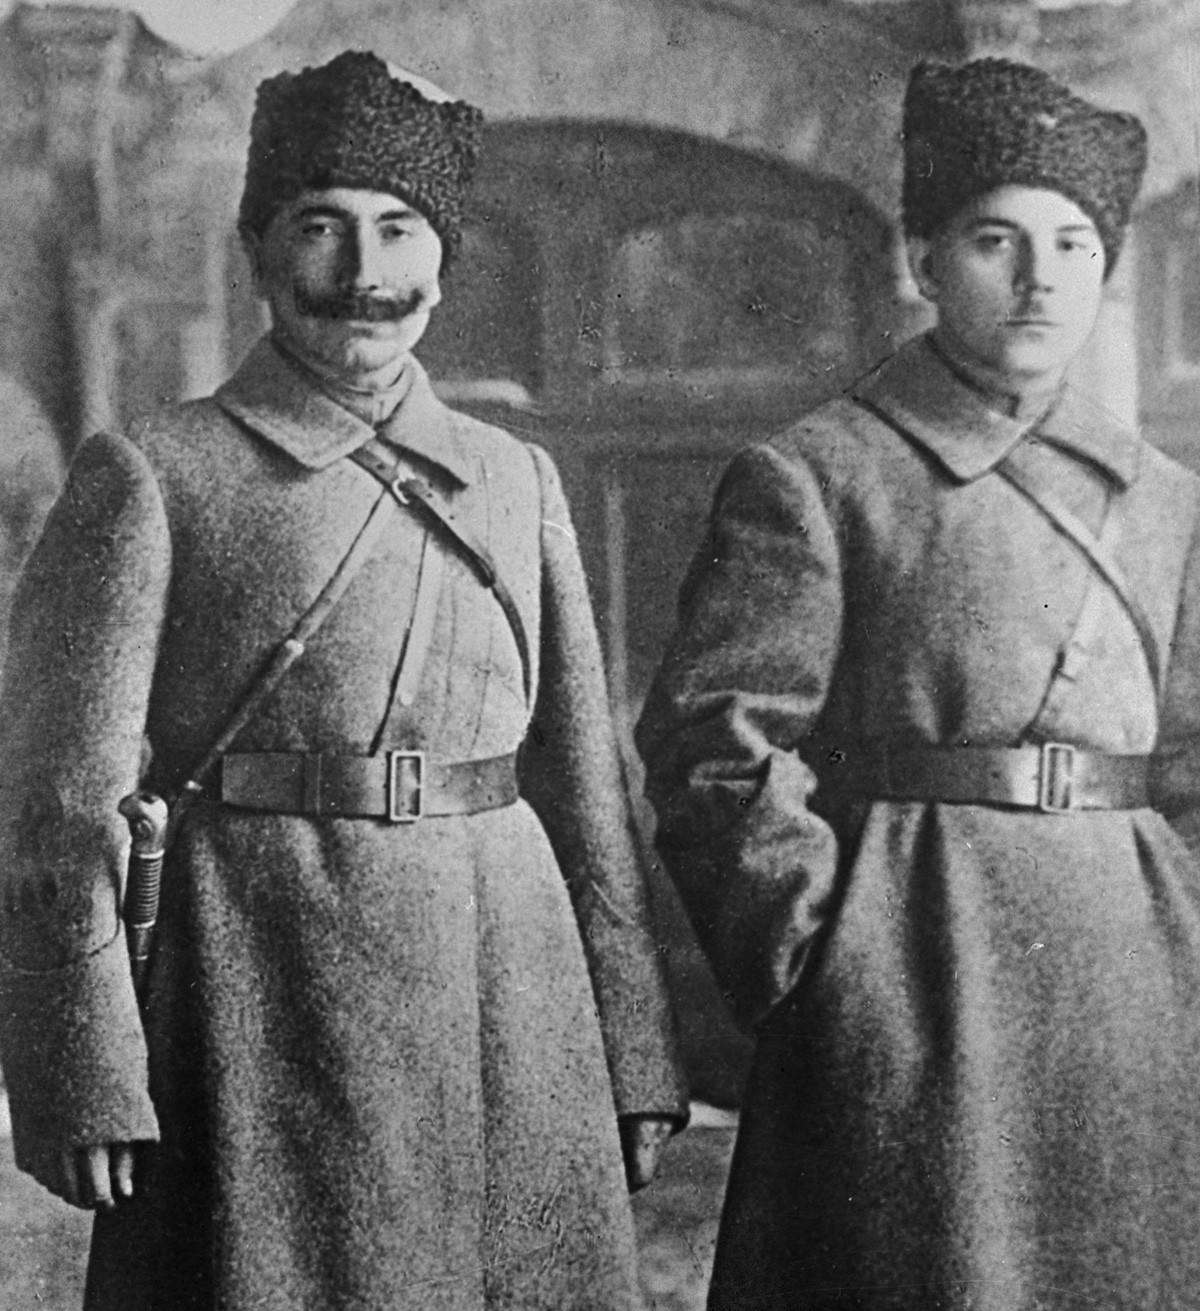 Semyon Budyonny and Kliment Voroshilov in 1918.